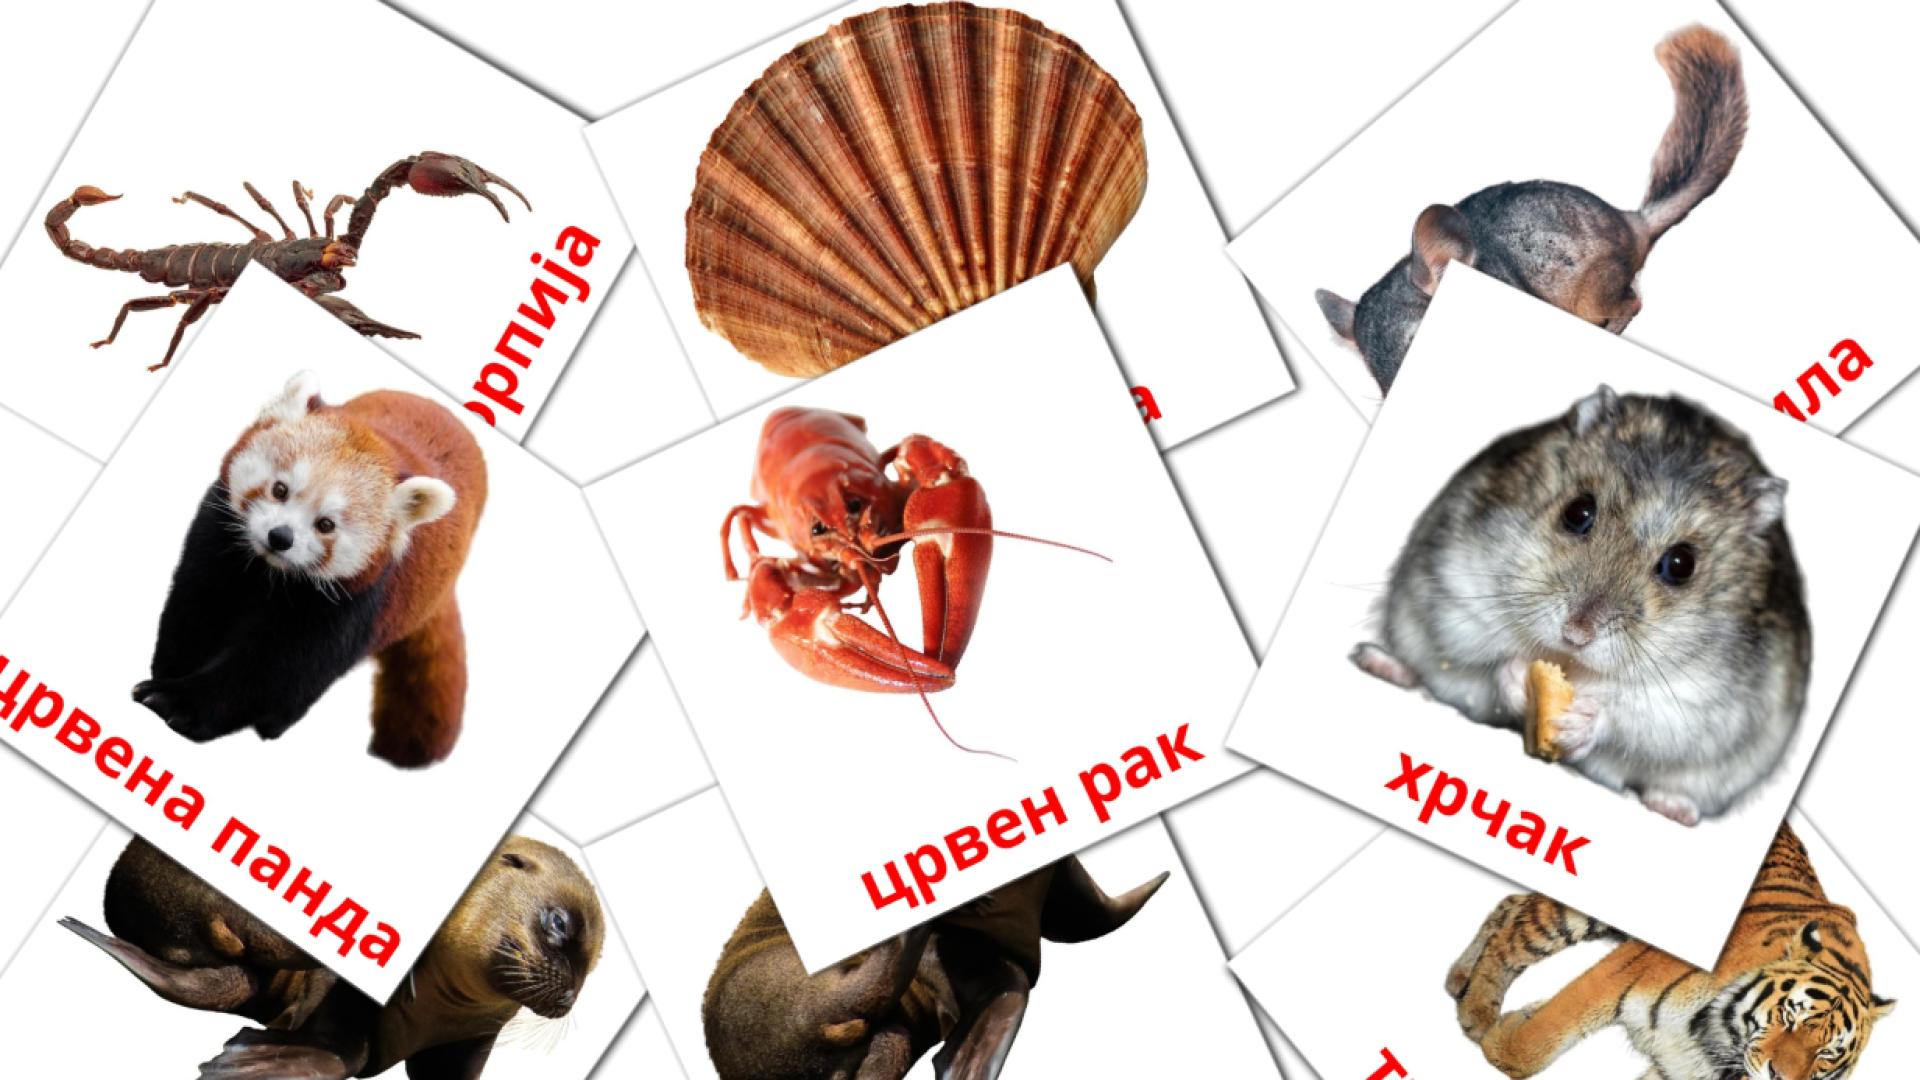 Mazedonisch Животниe Vokabelkarteikarten